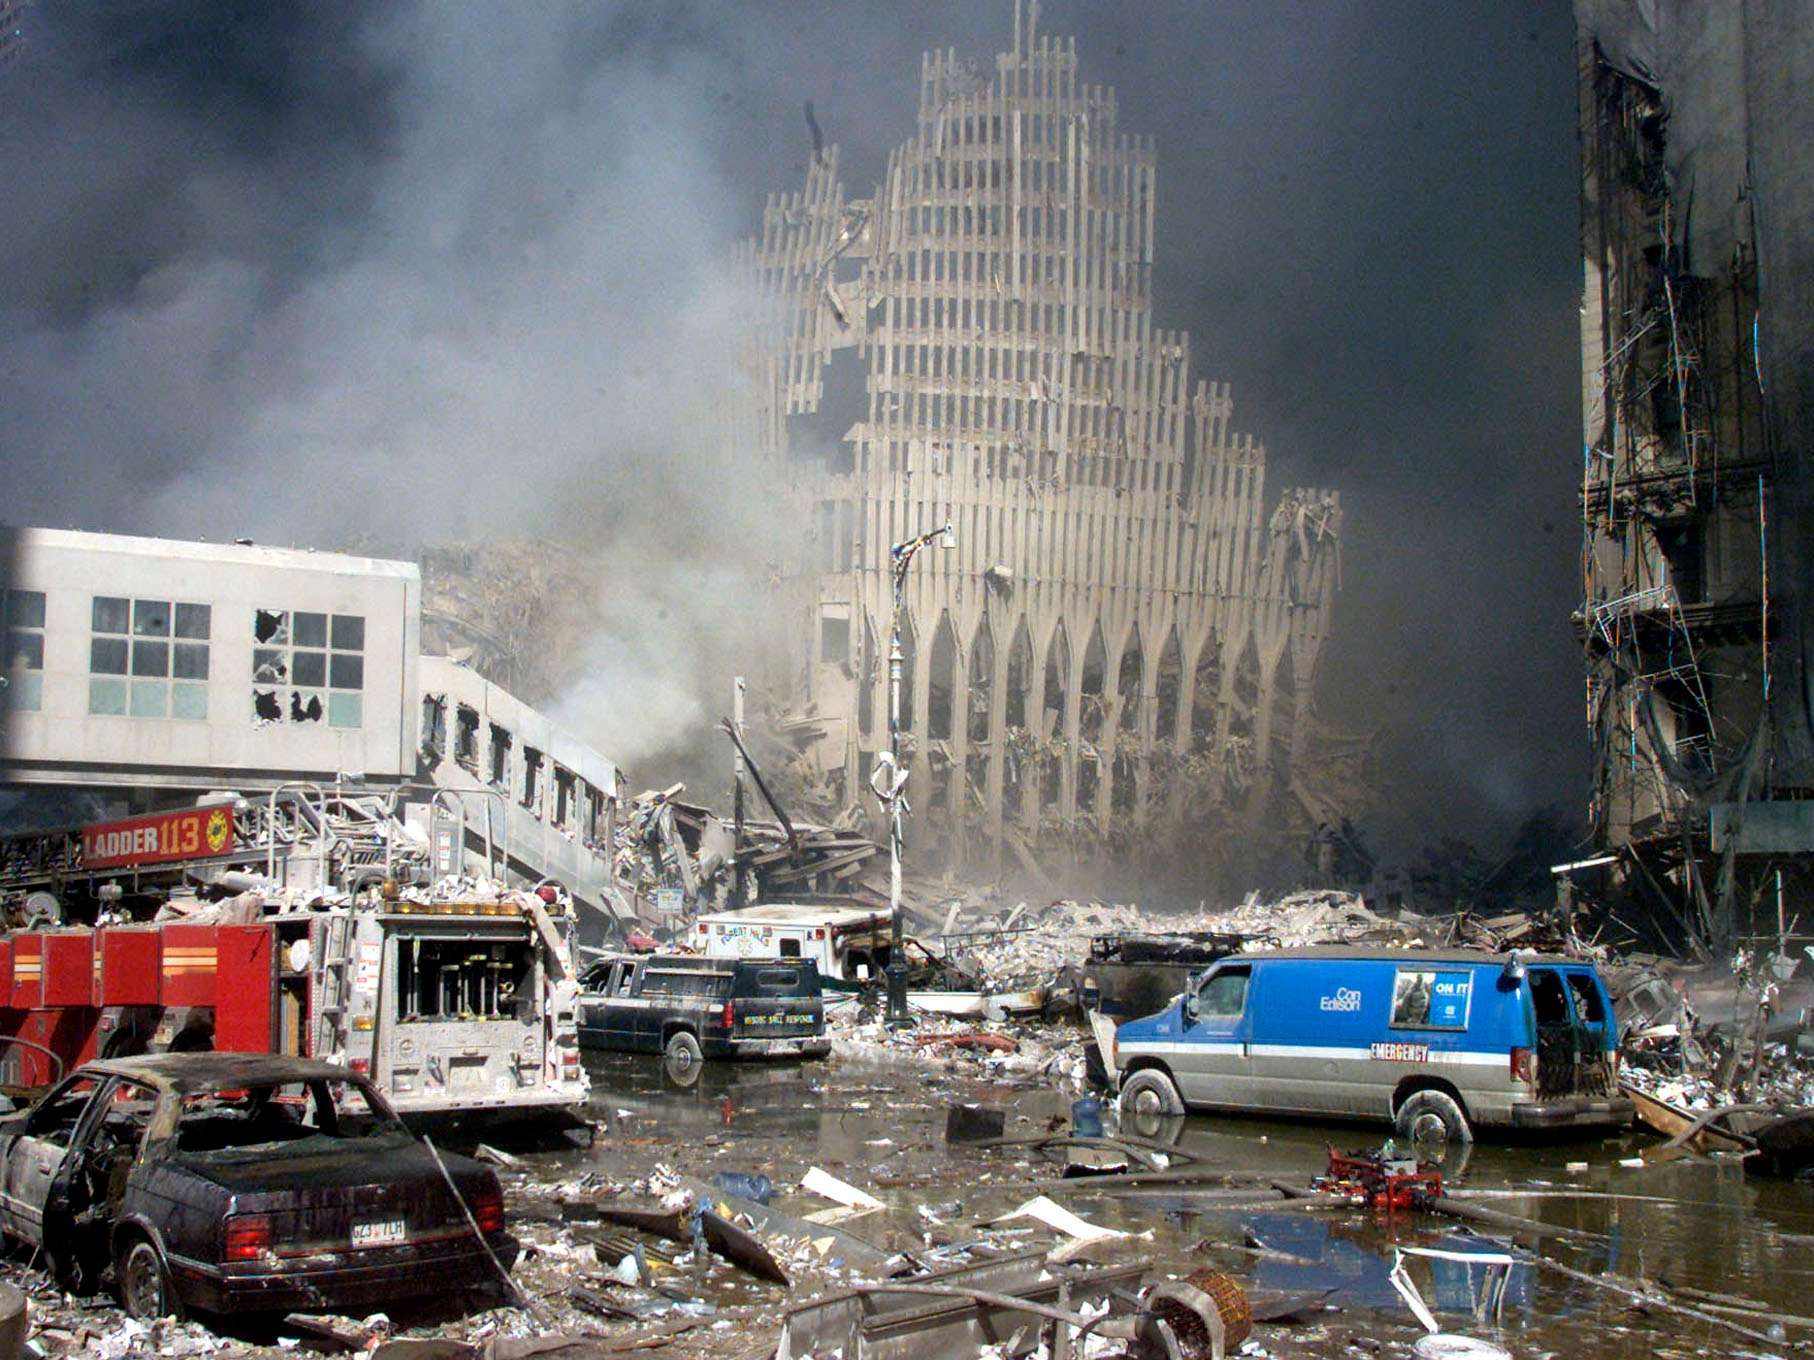 Теракт башен близнецов 11 сентября 2001. ВТЦ Нью-Йорк 2001. Башни-Близнецы 11 сентября 2001. Башни ВТЦ 11 сентября 2001. Разрушенные башни Близнецы 11 сентября.